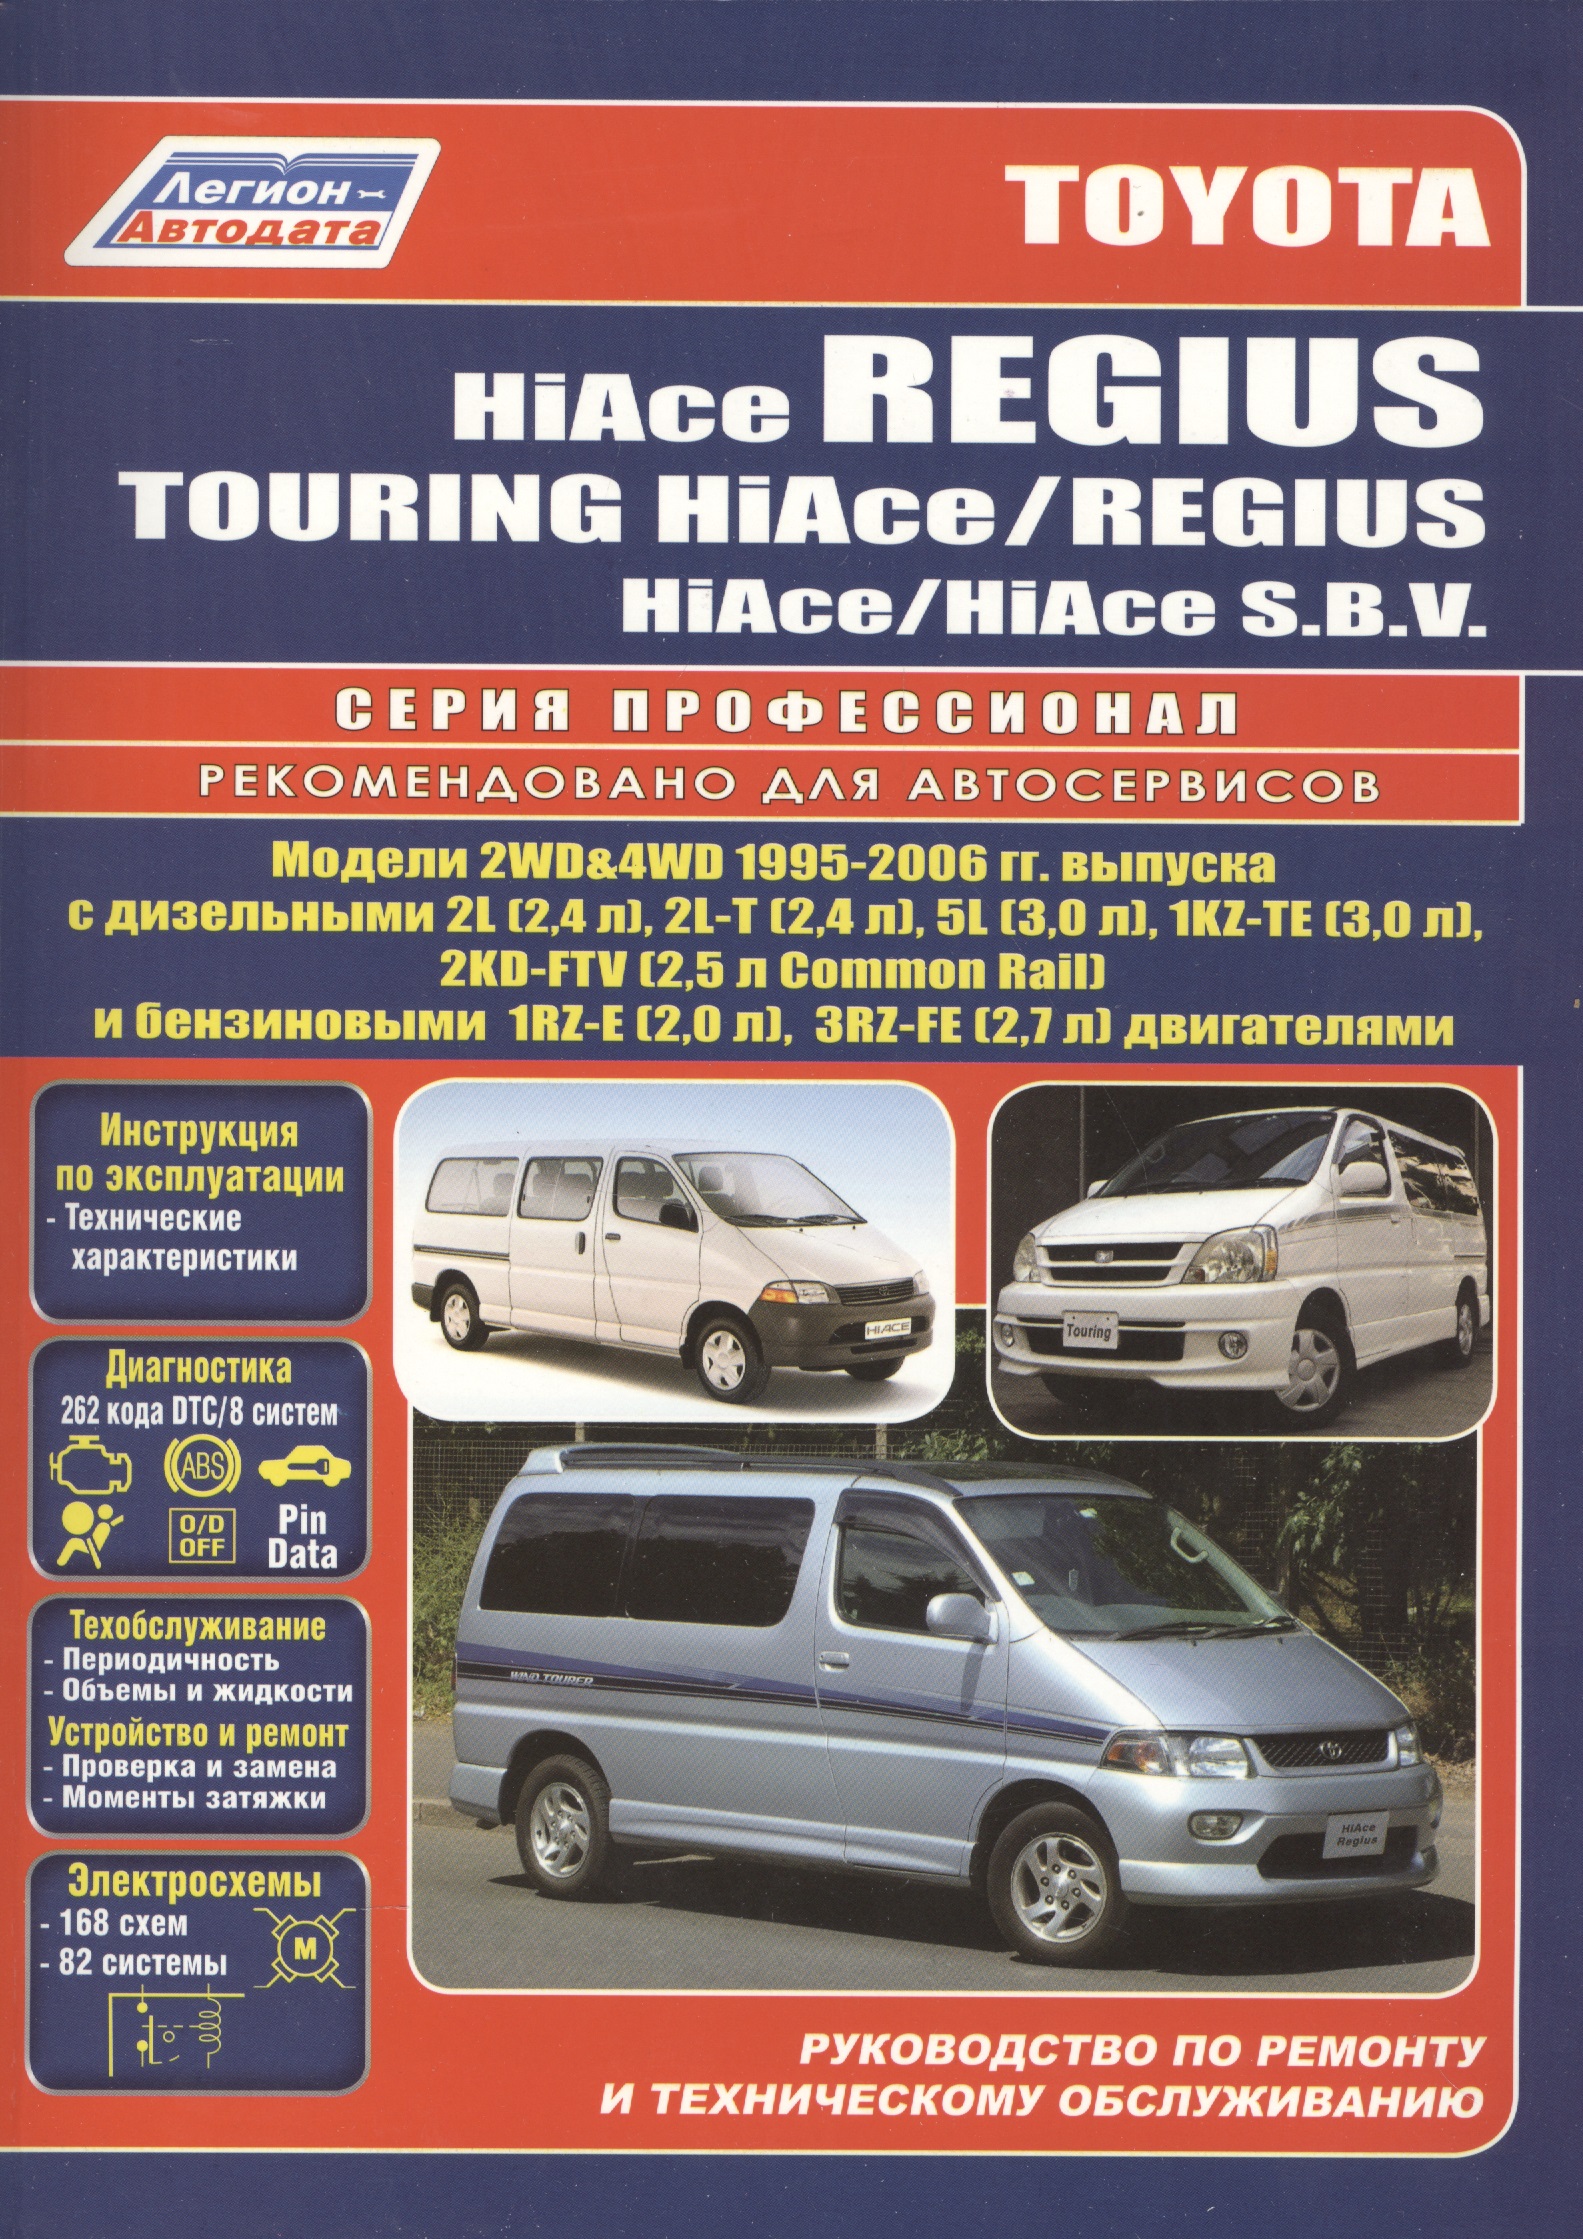 Toyota HiAce / Regius / HiAce SBV. Модели 2WD&4WD 1995-2006 гг. выпуска с дизельными 2L (2,4 л.), 2L-T (2,4 л.)… Руководство по ремонту и техническому обслуживанию автомобилей. комплект адаптеров atlant для установки багажника toyota hiace regius